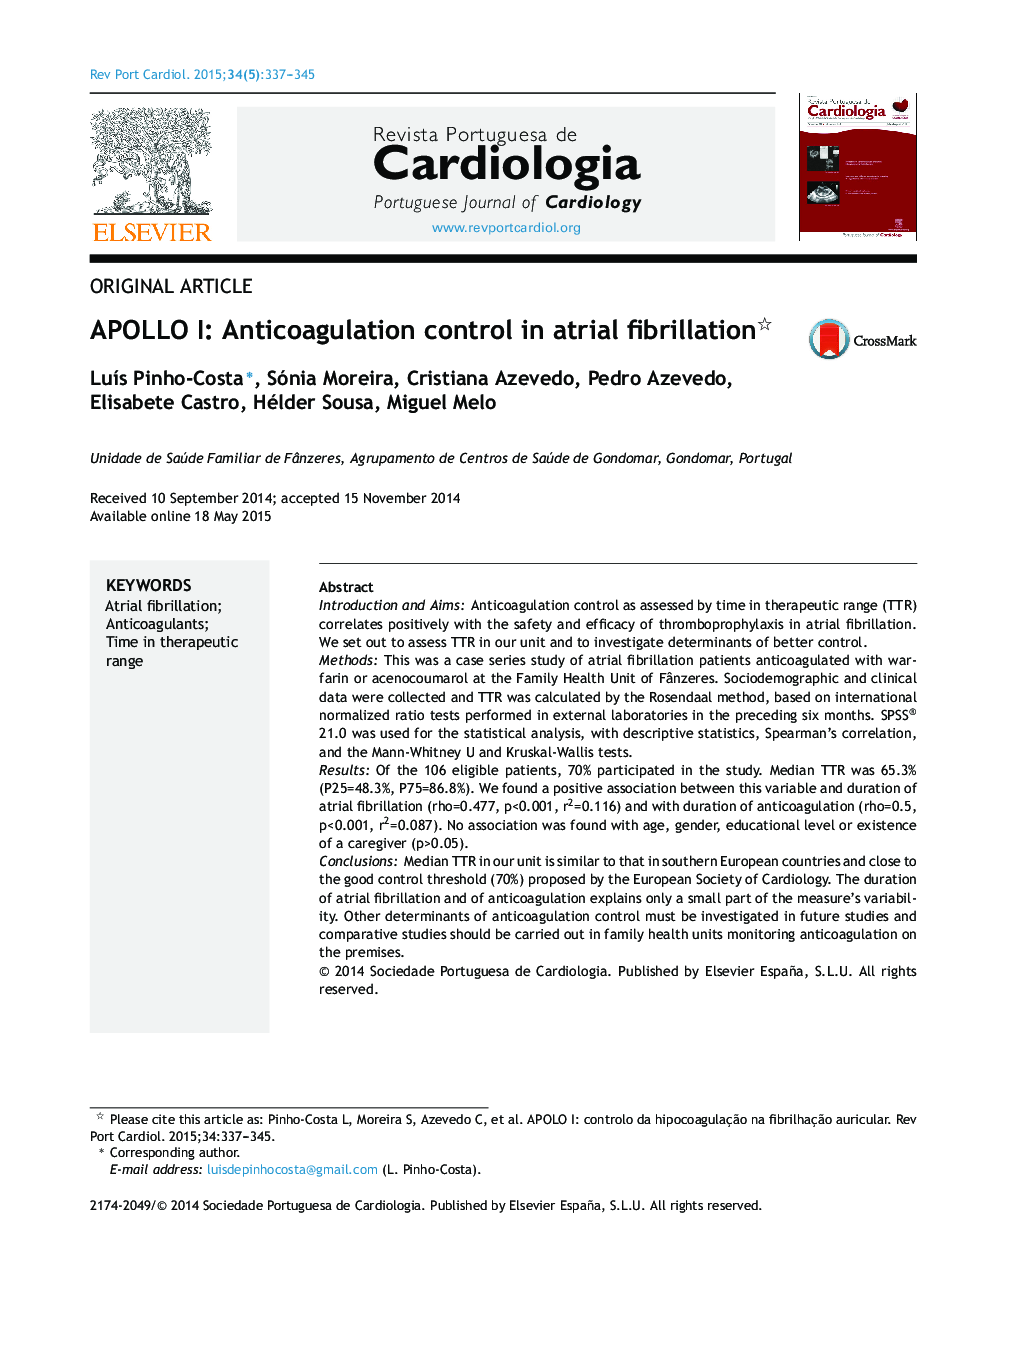 APOLLO I: Anticoagulation control in atrial fibrillation